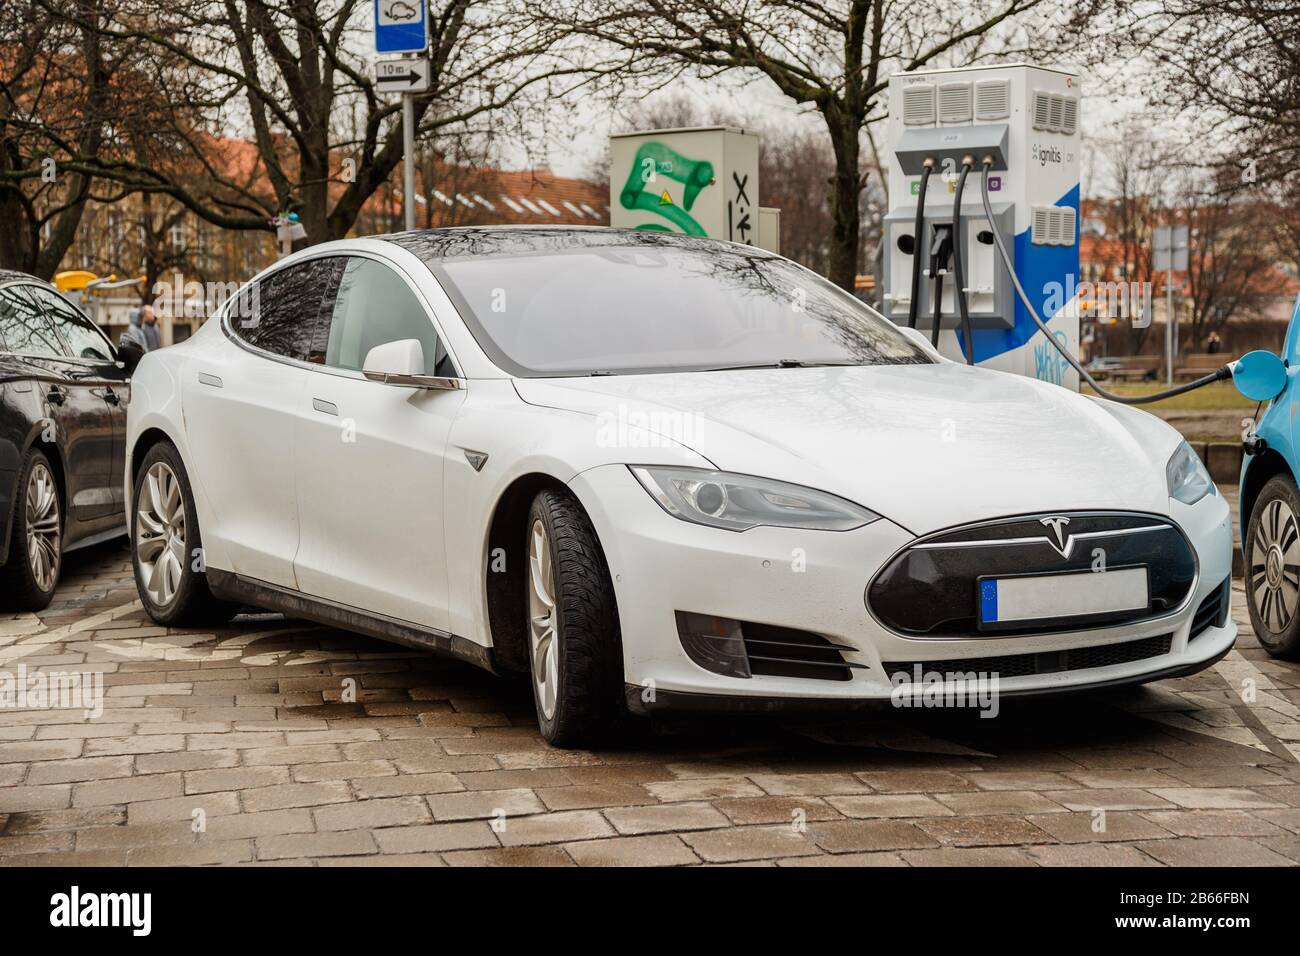 Vilnius, Lituanie - 07 mars 2020: Carshering moderne voiture électrique Tesla modèle S près d'un chargeur dans la rue de la ville. Banque D'Images